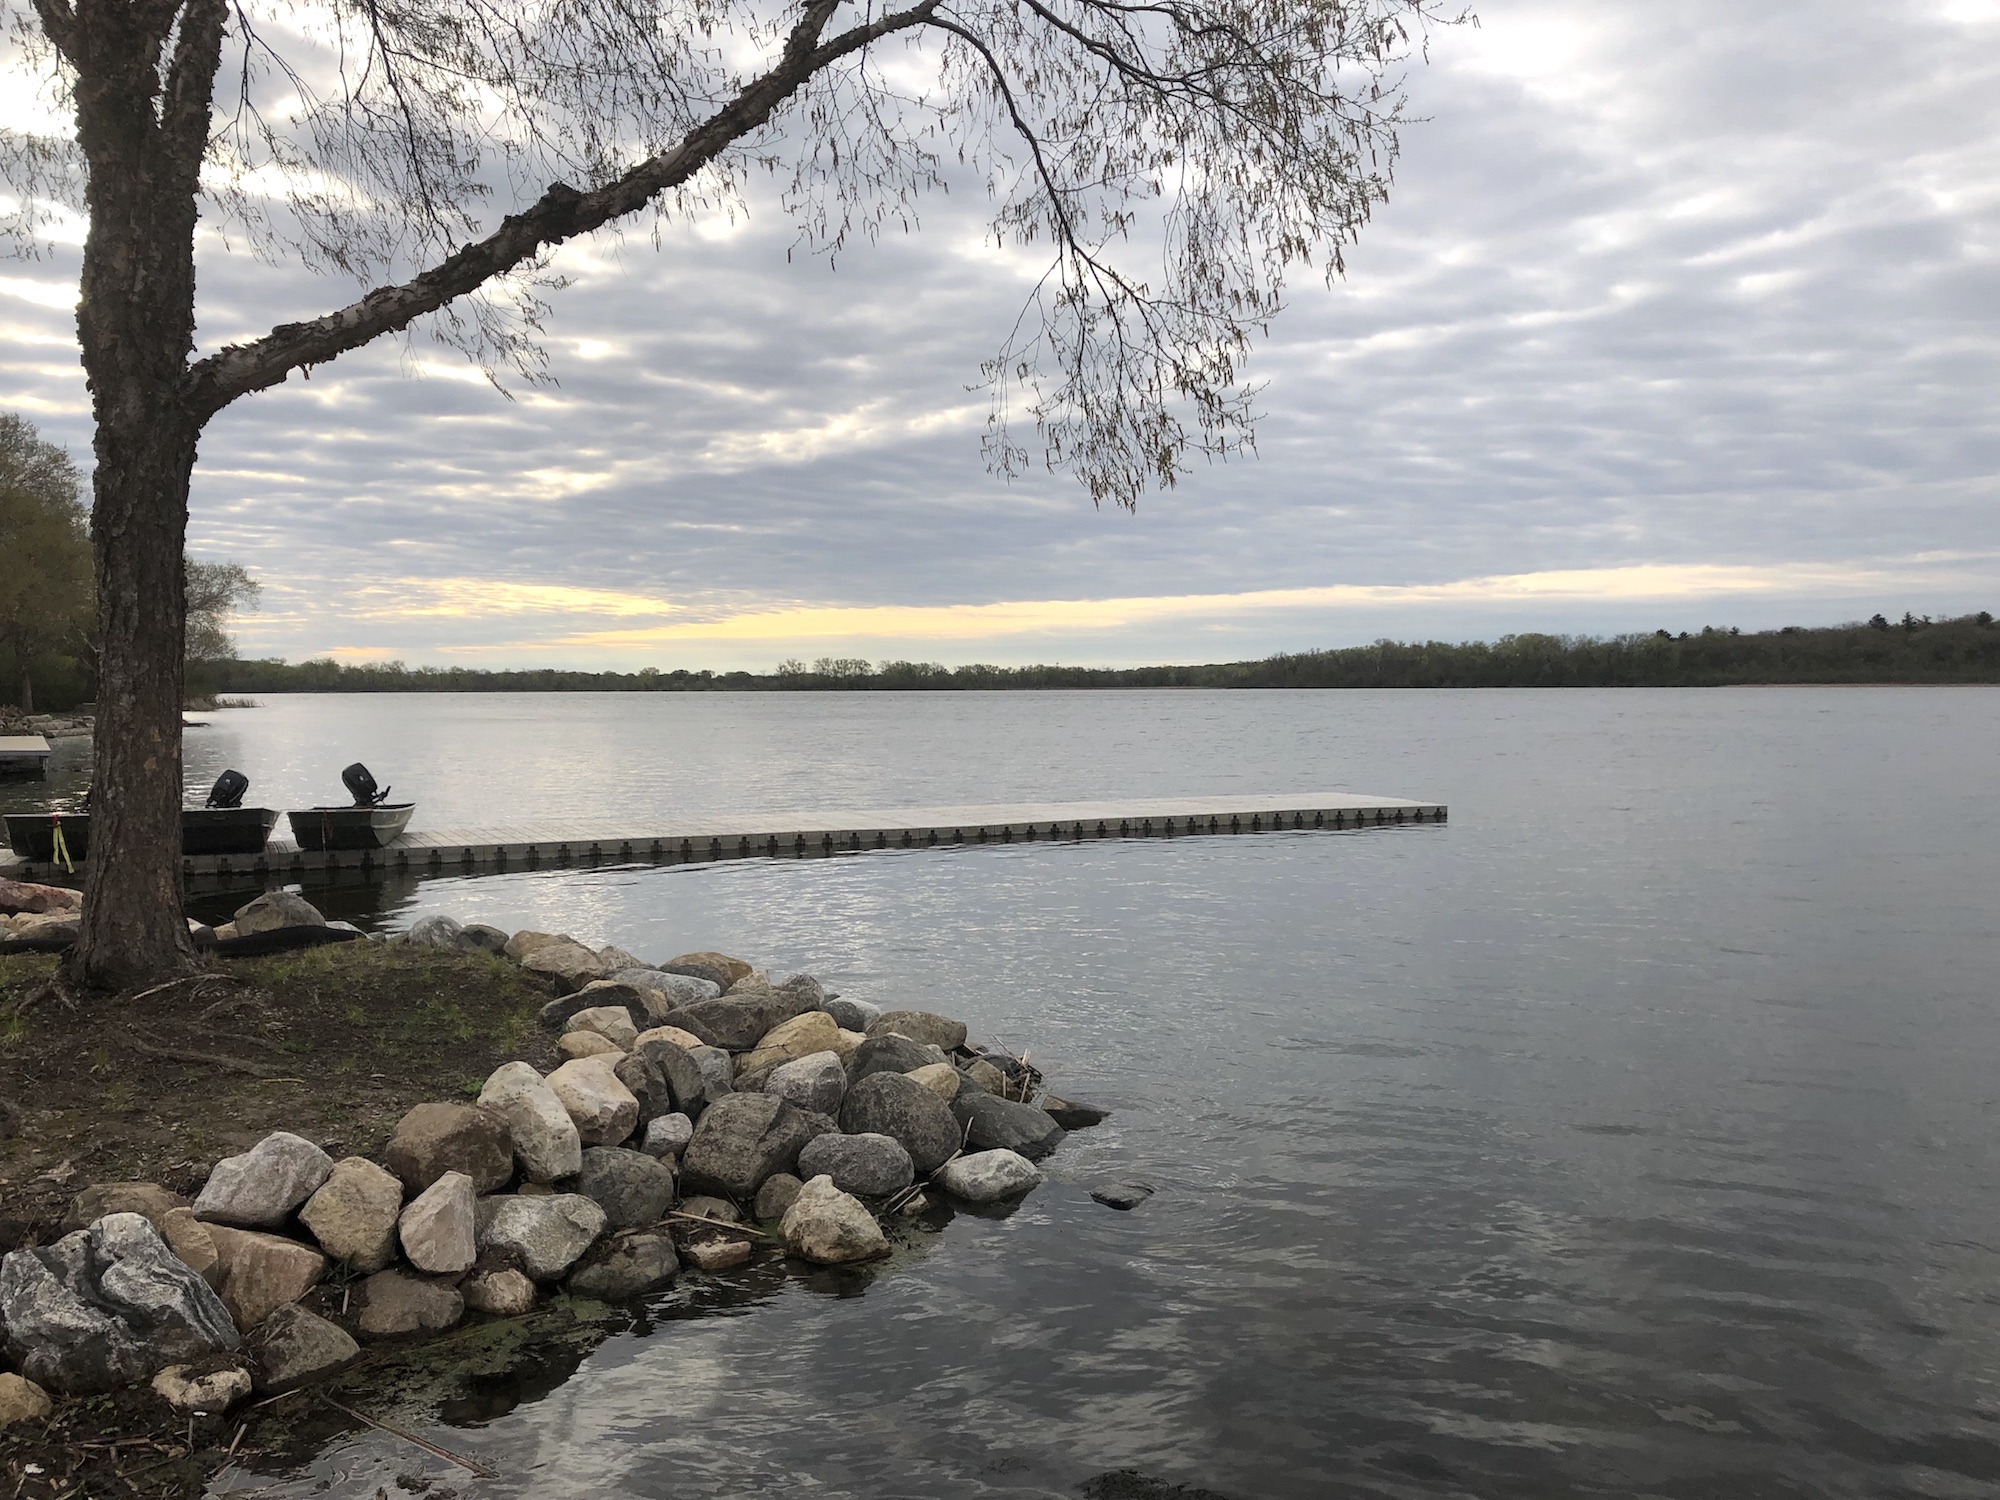 Lake Wingra on May 7, 2019.